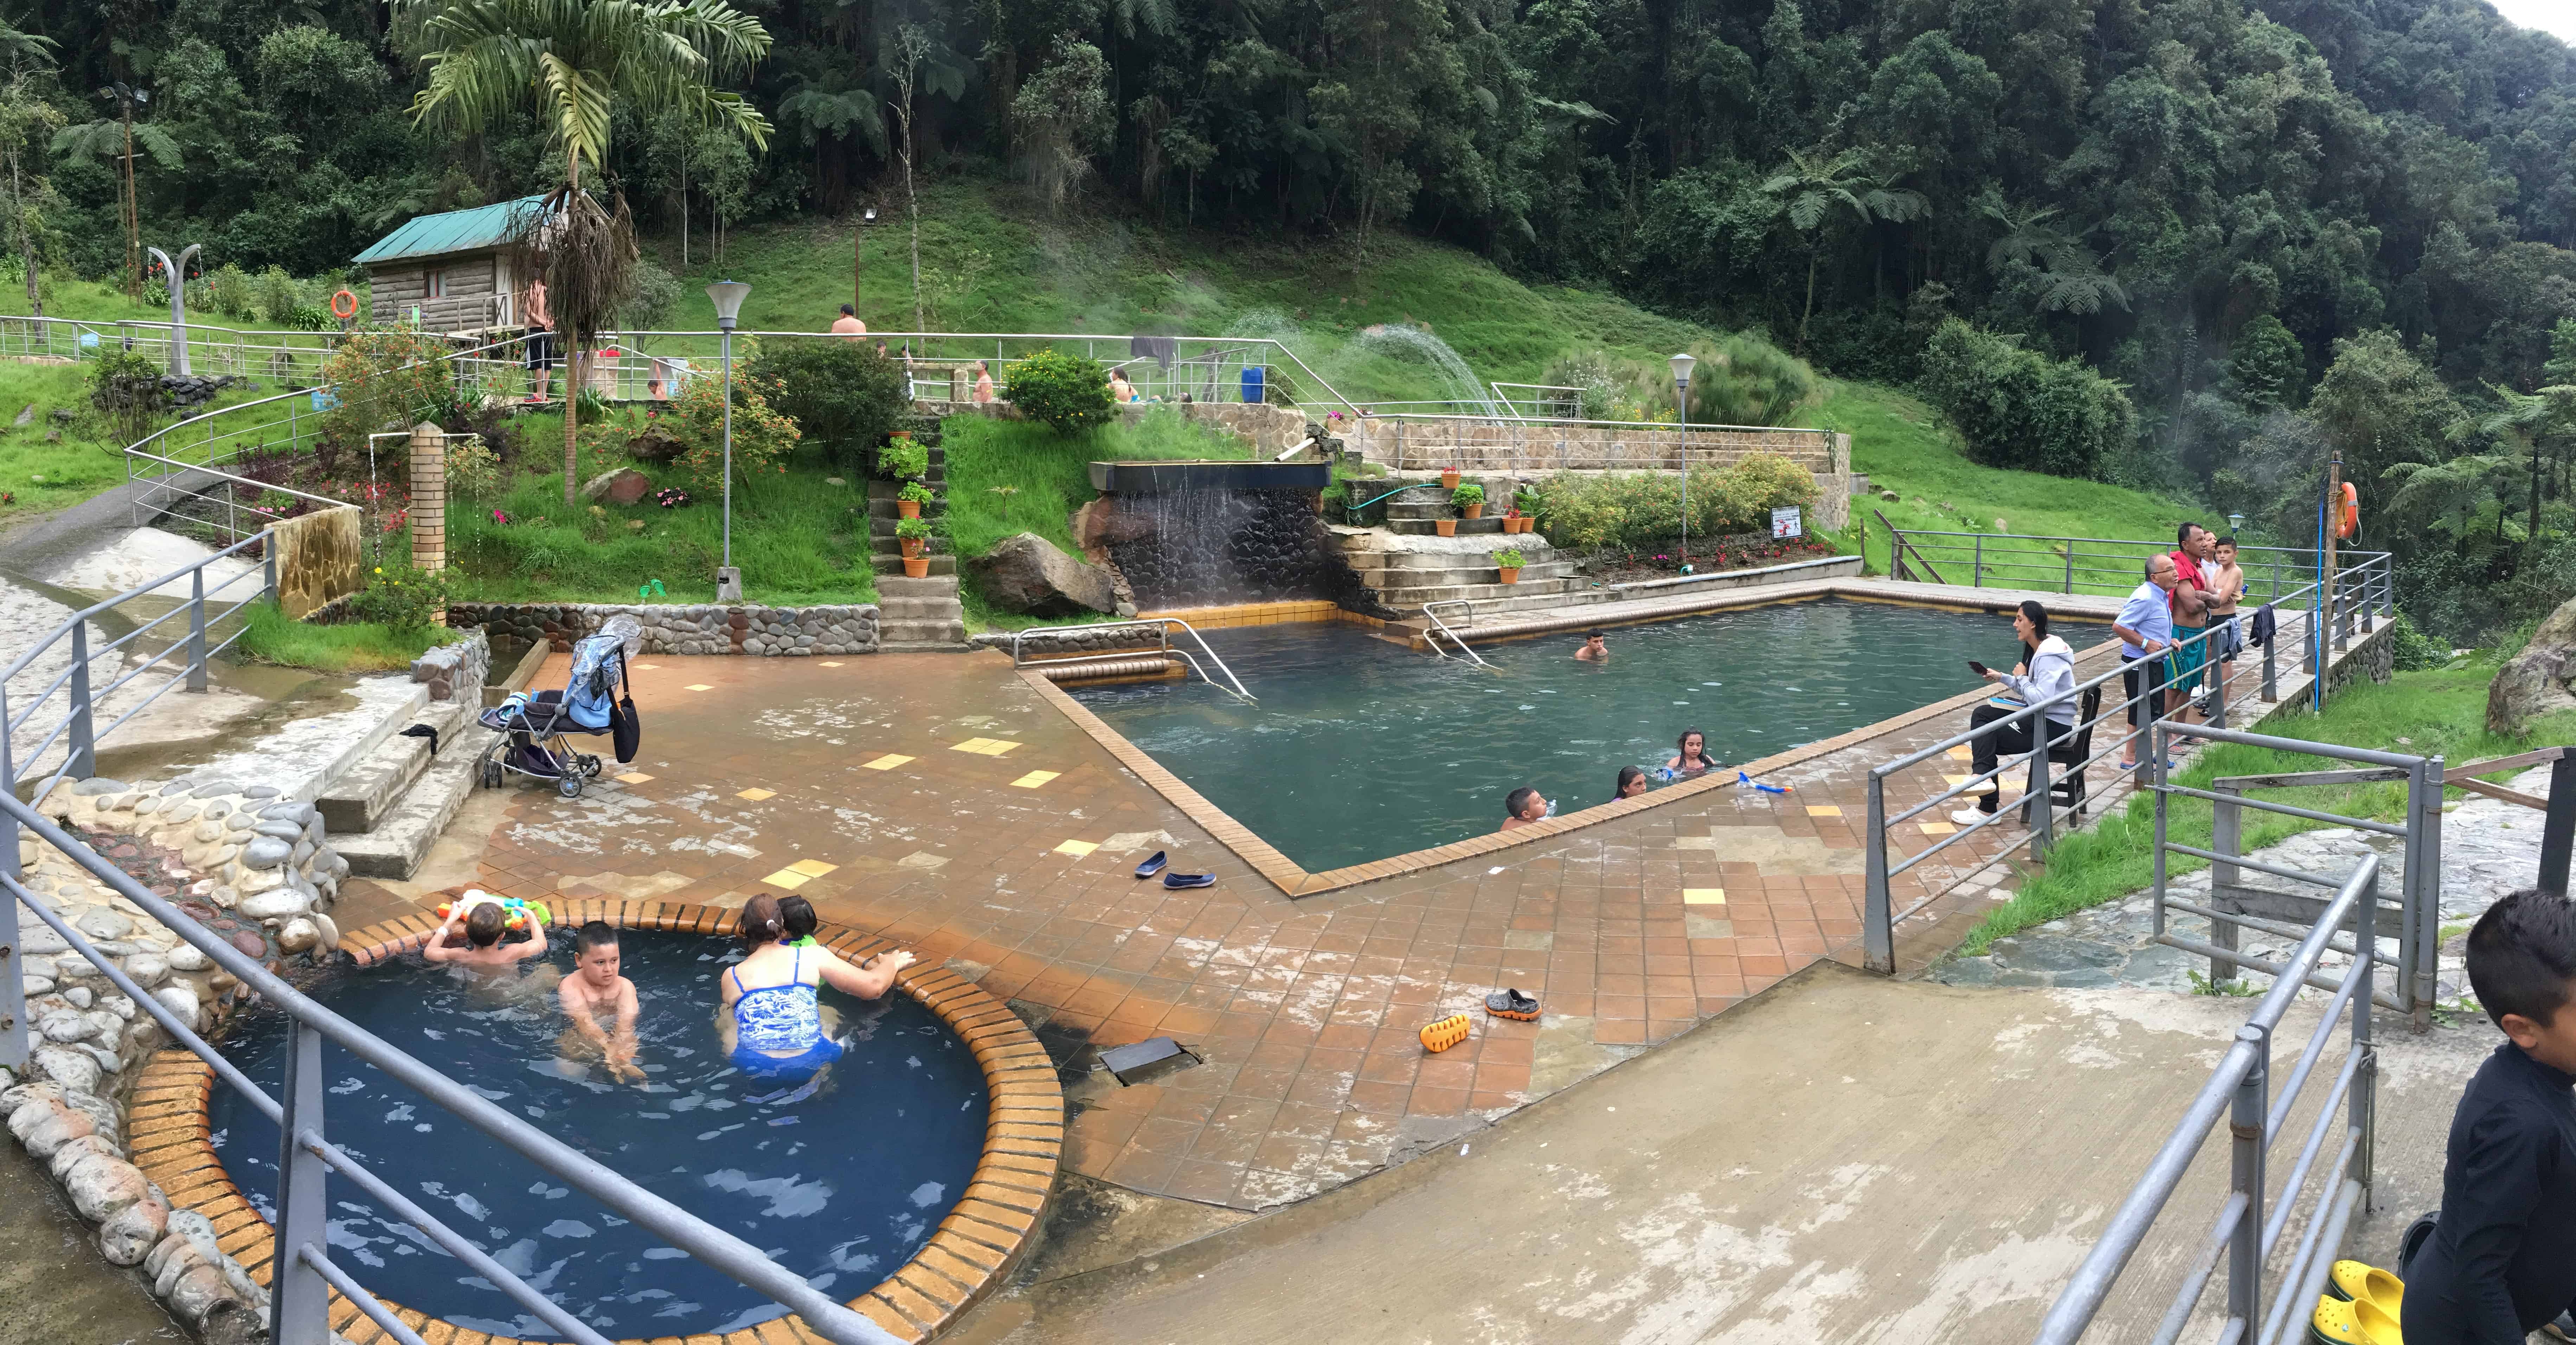 Pool area at Termales San Vicente in Santa Rosa de Cabal, Risaralda, Colombia